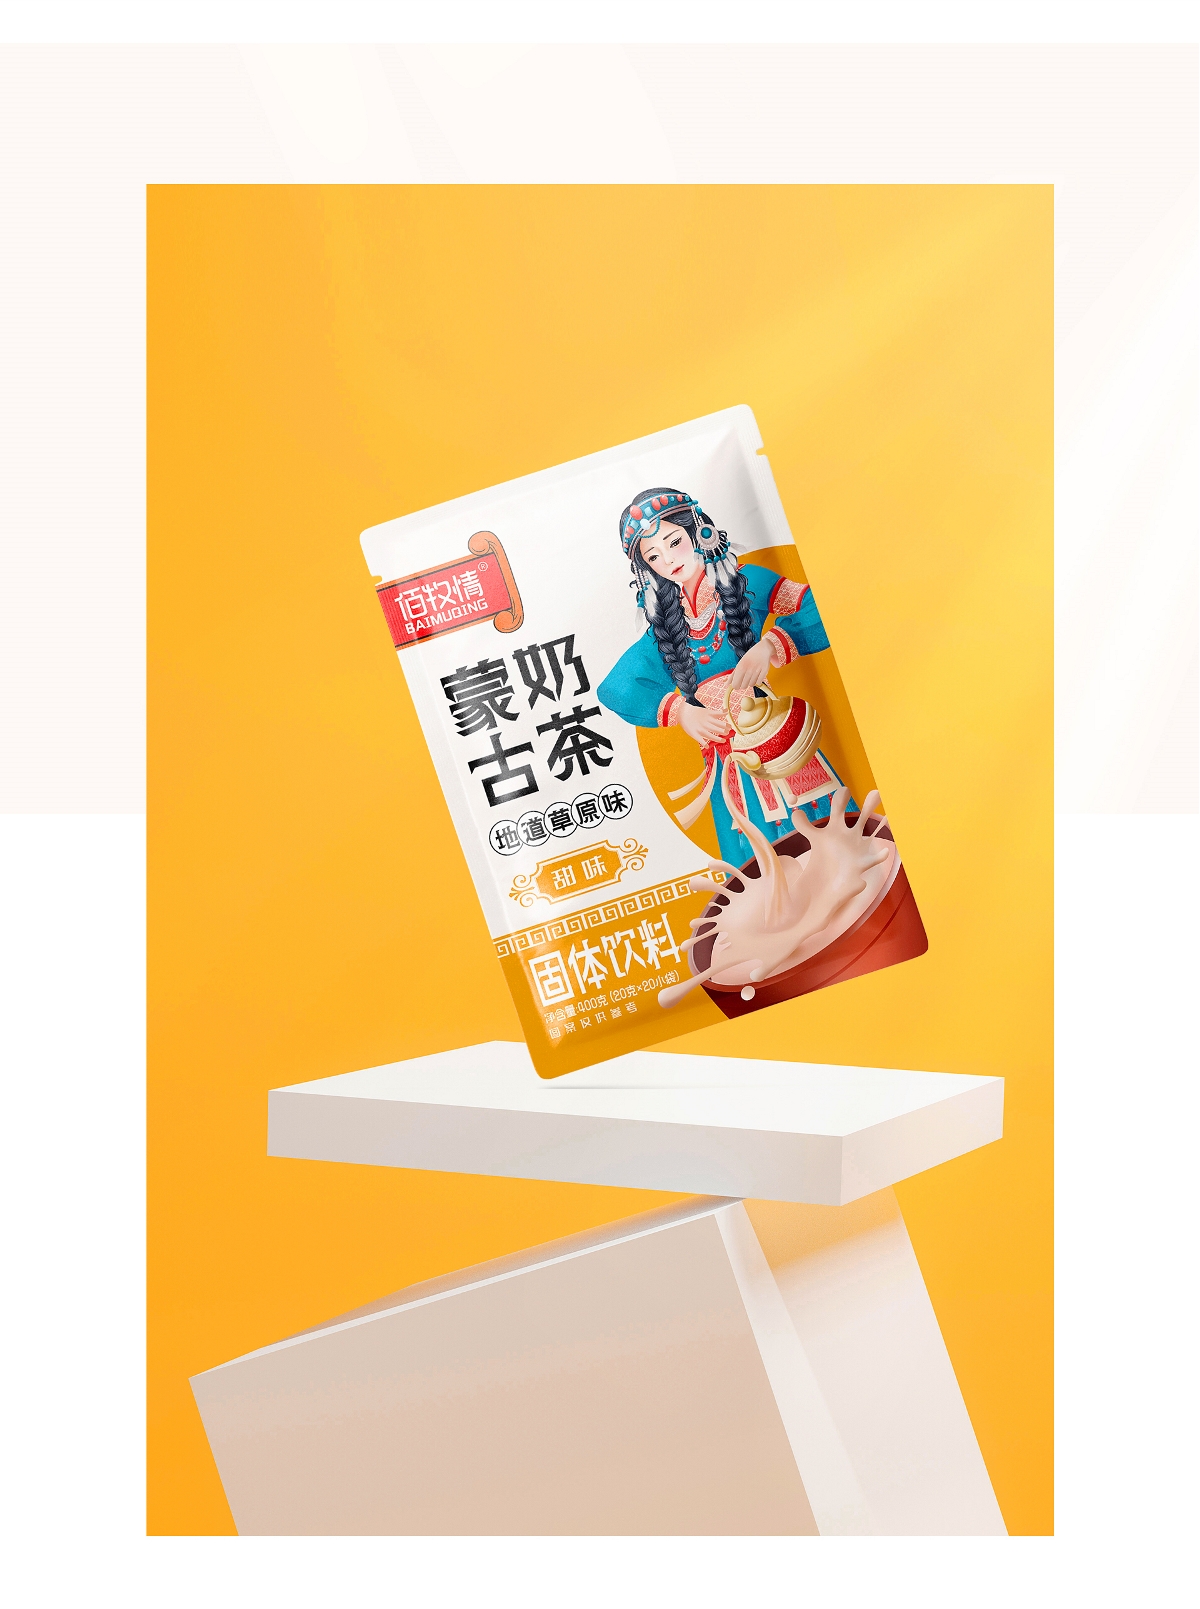 火锅底料&蒙古奶茶—包装设计